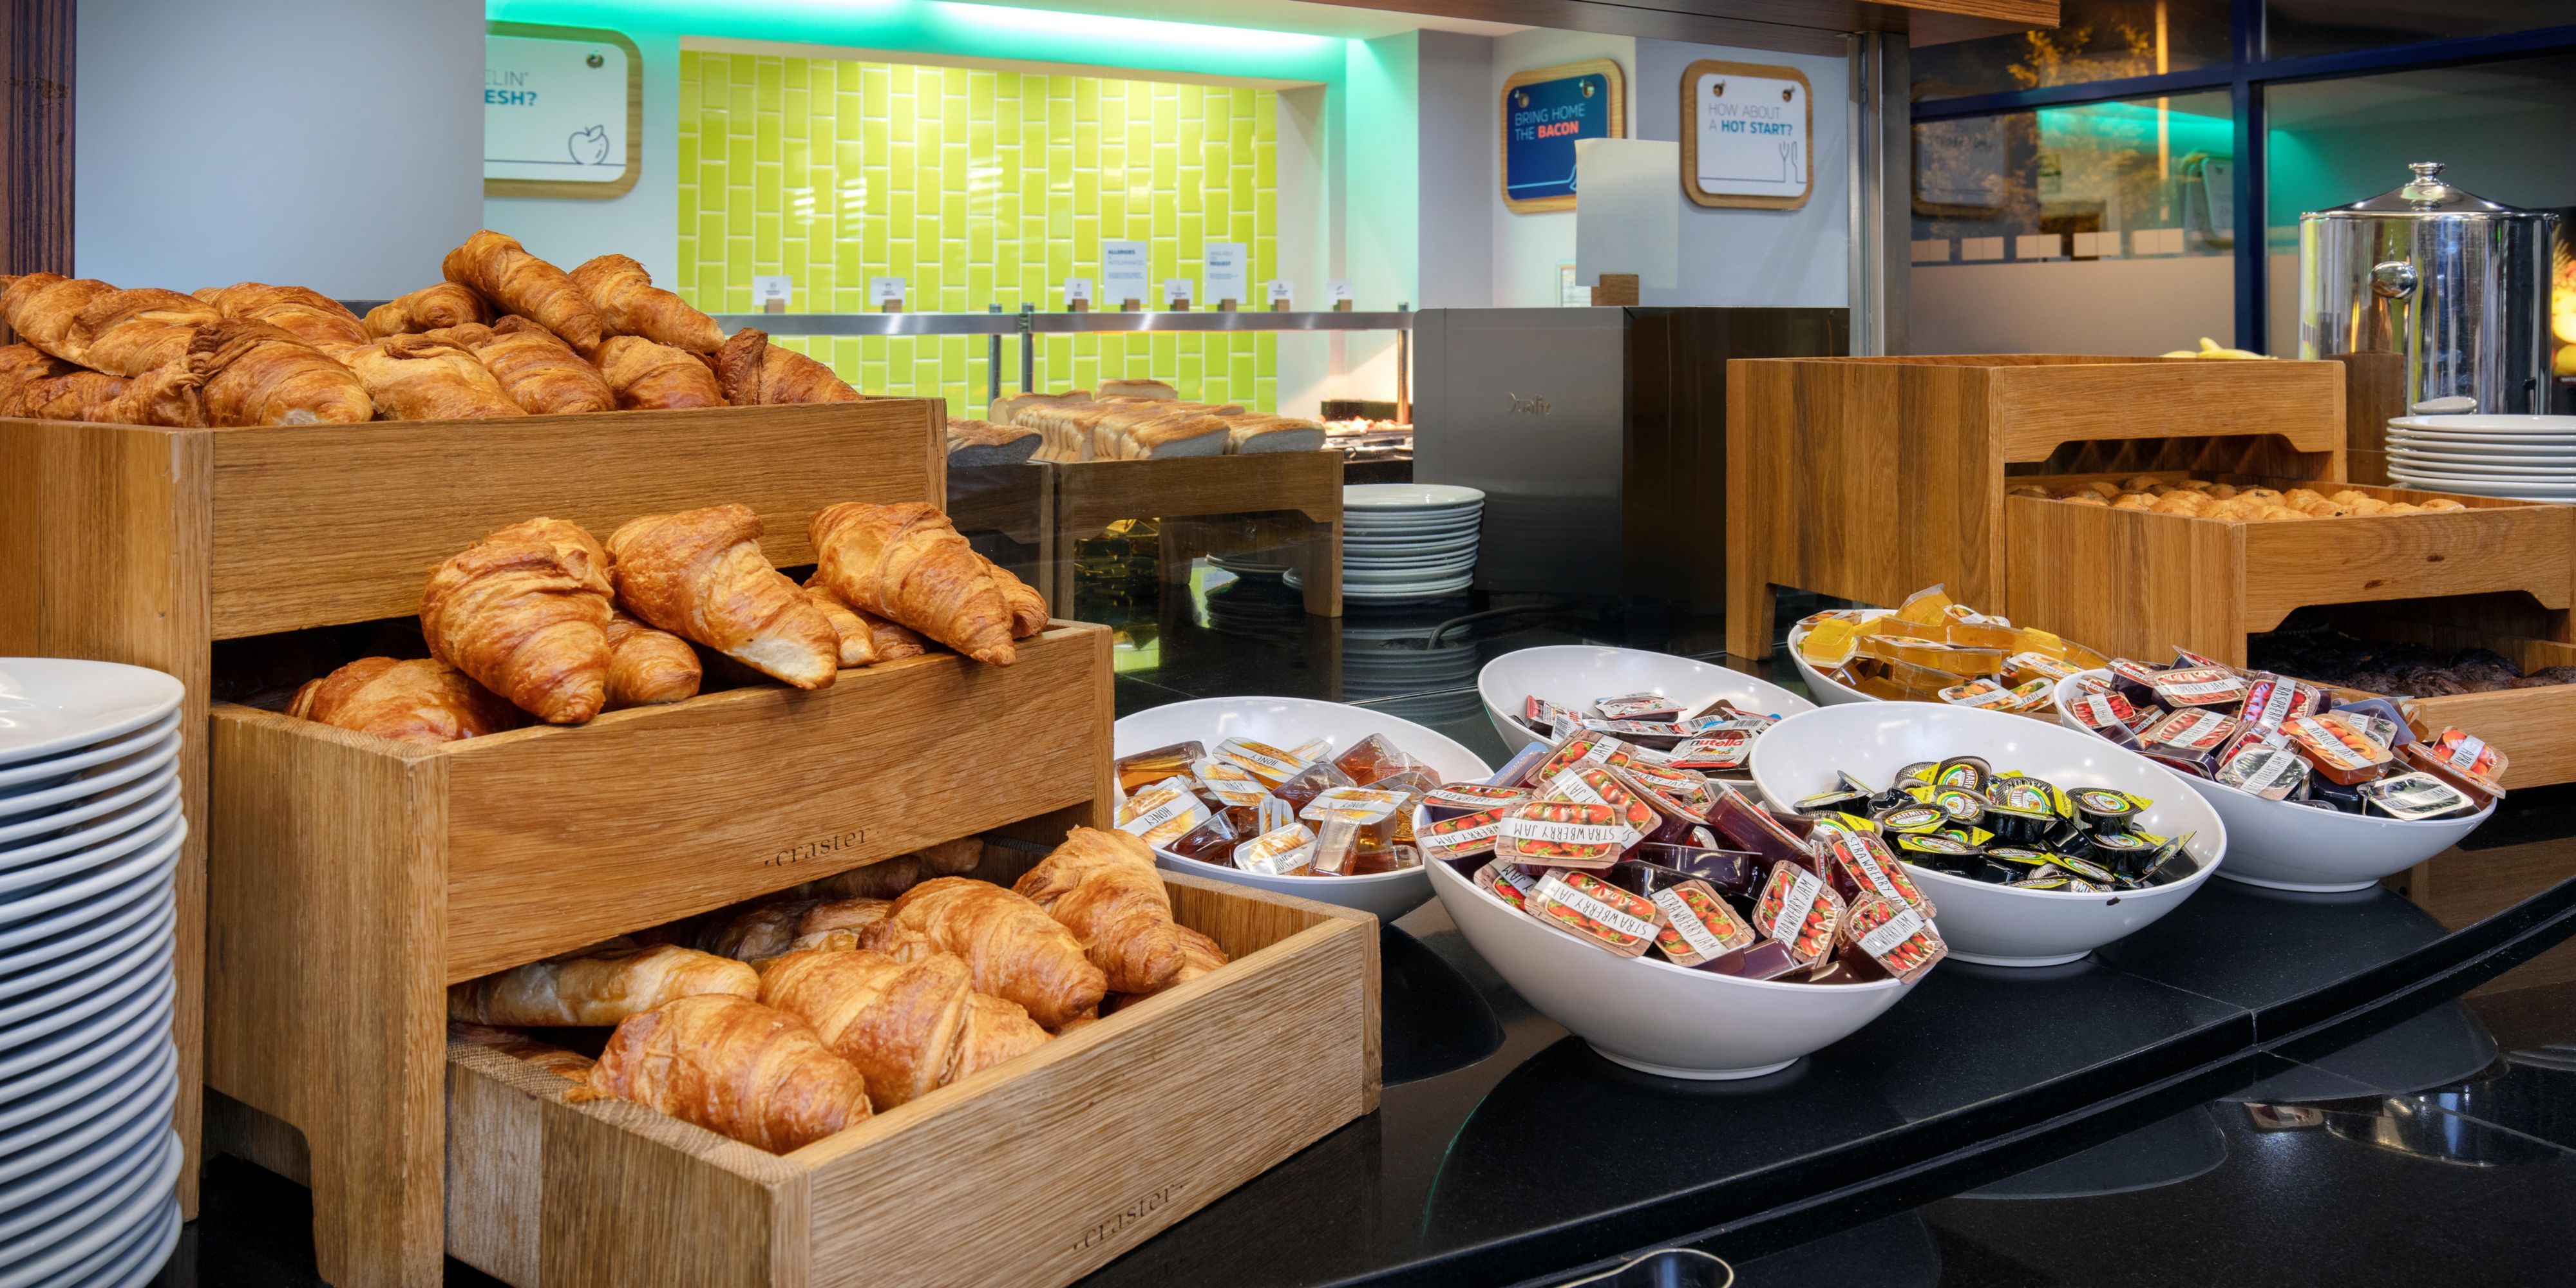 Express Start Buffet Breakfast always inclusive. Open from 
6:30 am – 10:00 am Weekdays
07:00 am – 10:30 am Weekends
